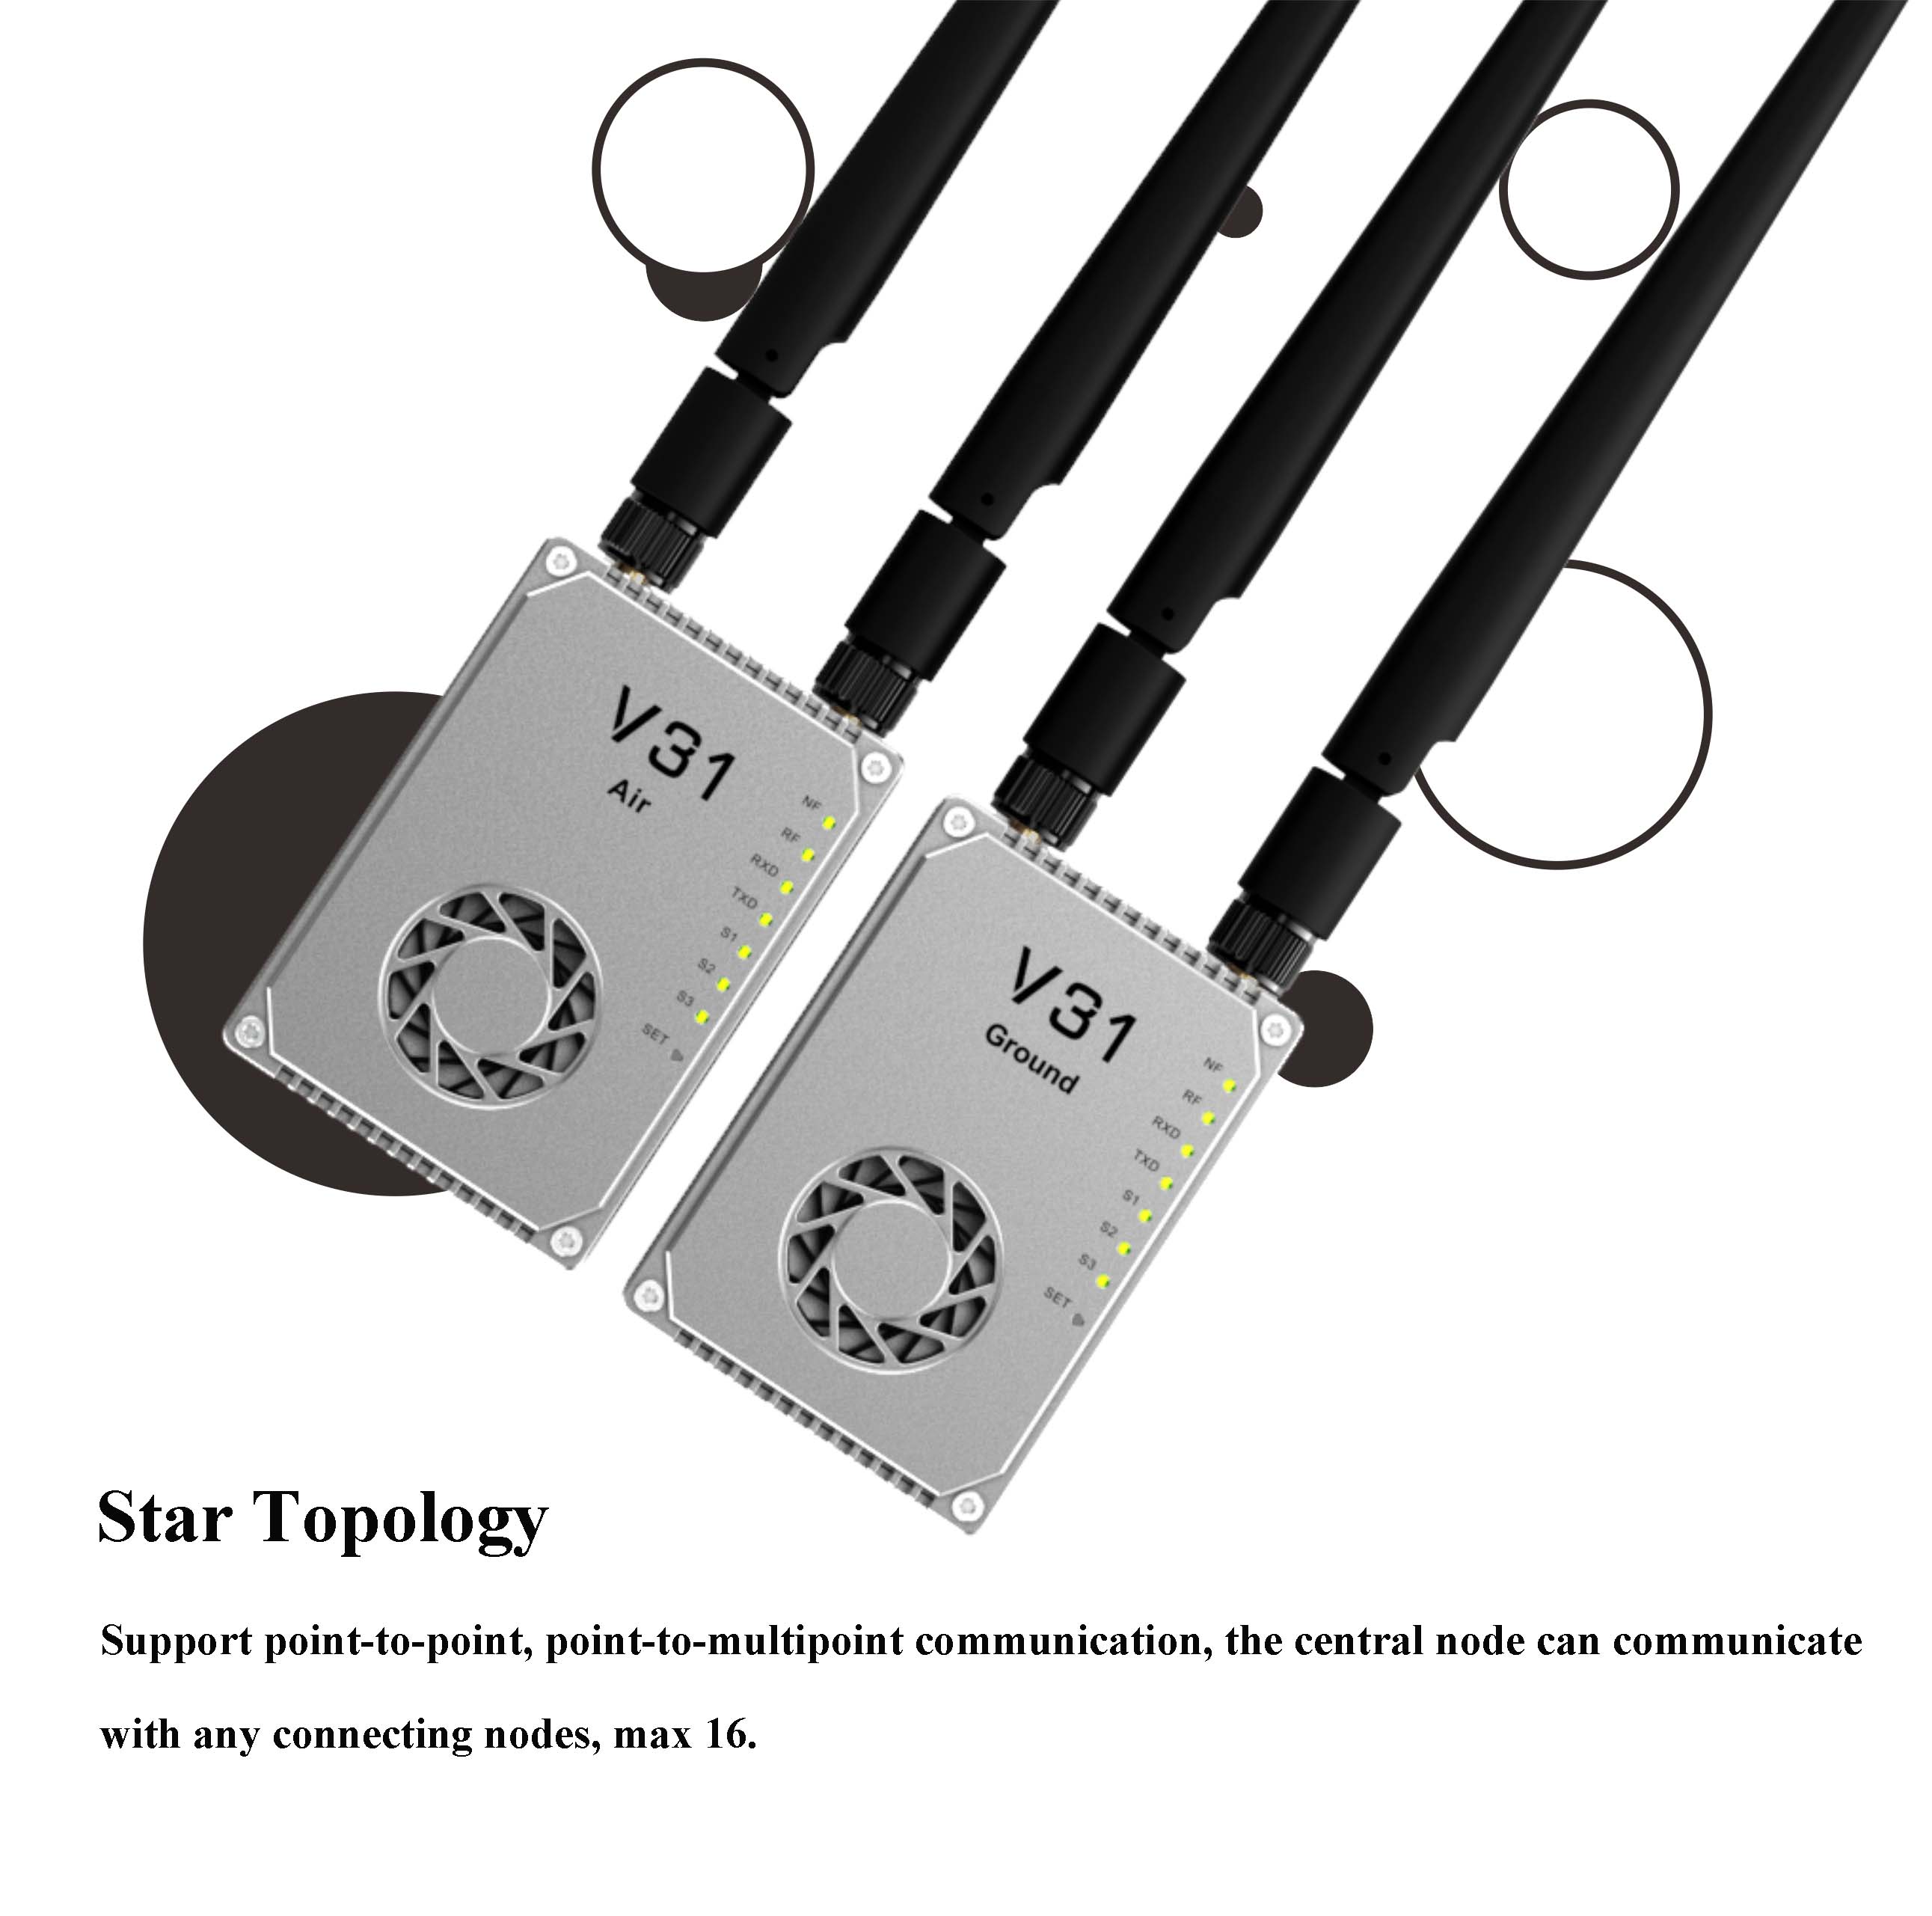 V31 Pro Набір для зв'язку V31 Pro : відео, телеметрія, управління - 50 км